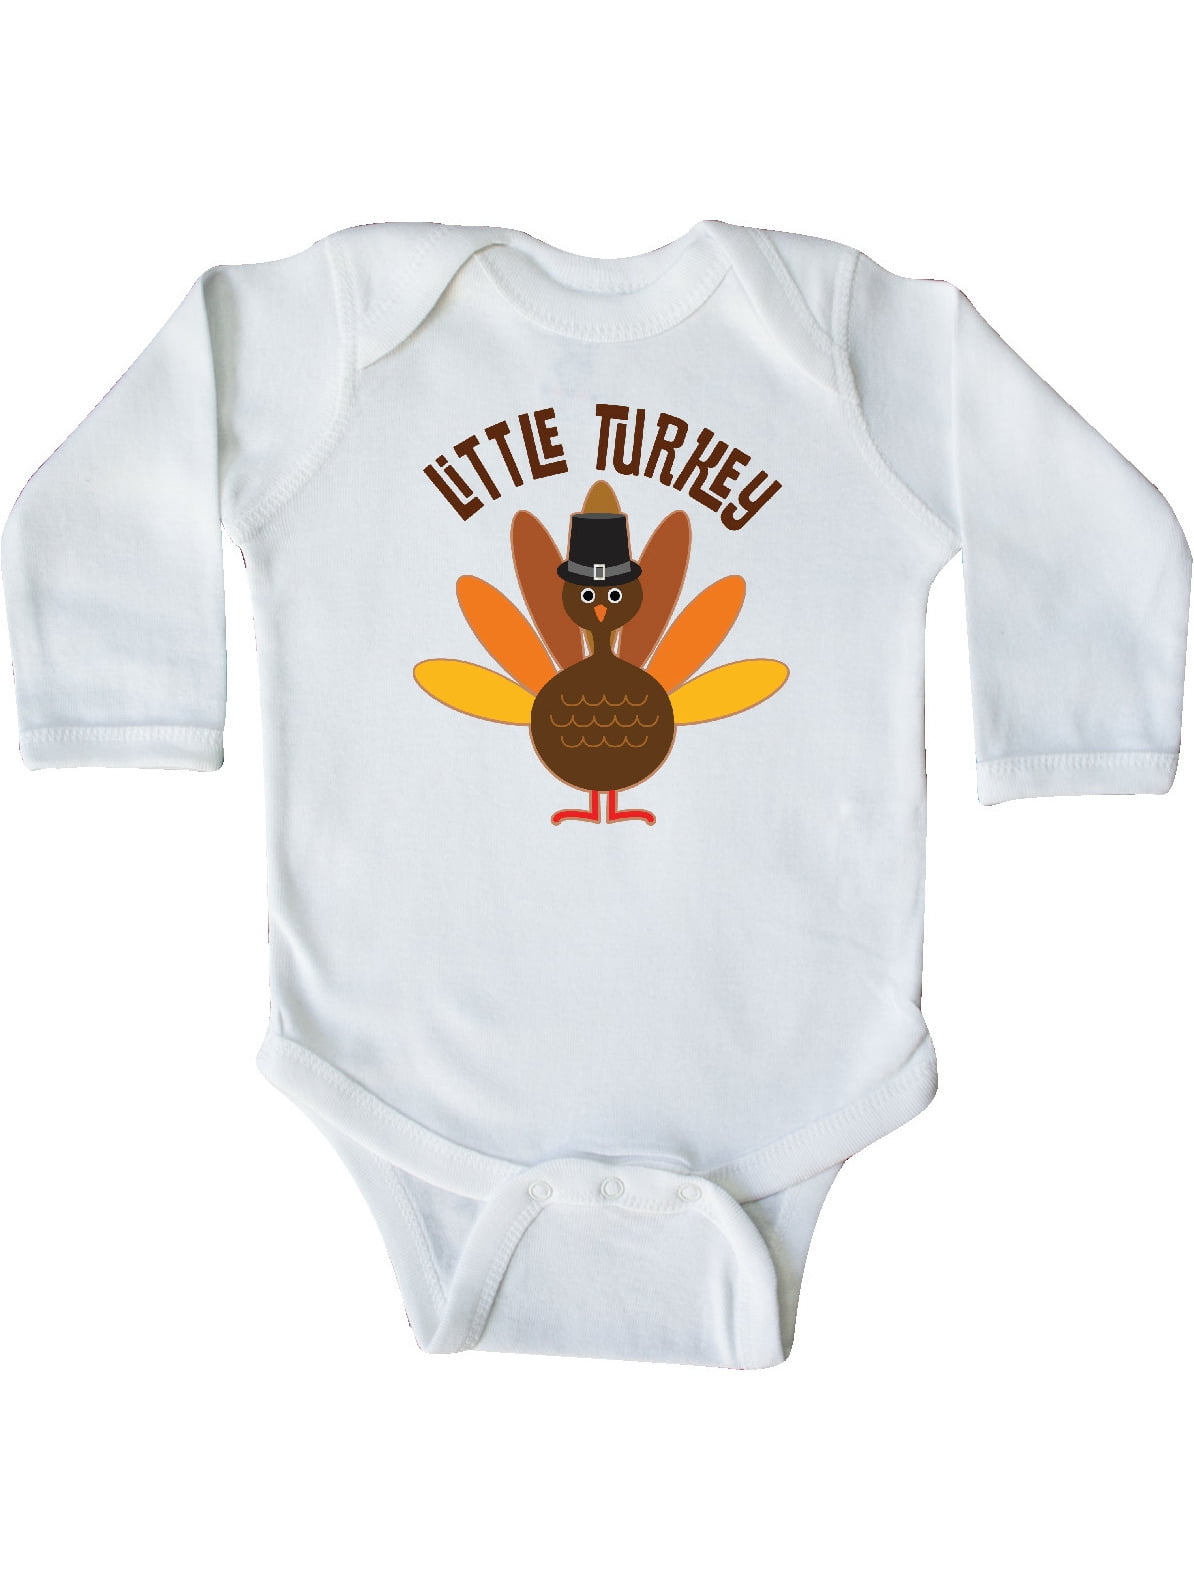 inktastic Auntie Little Turkey Thanksgiving Baby T-Shirt 